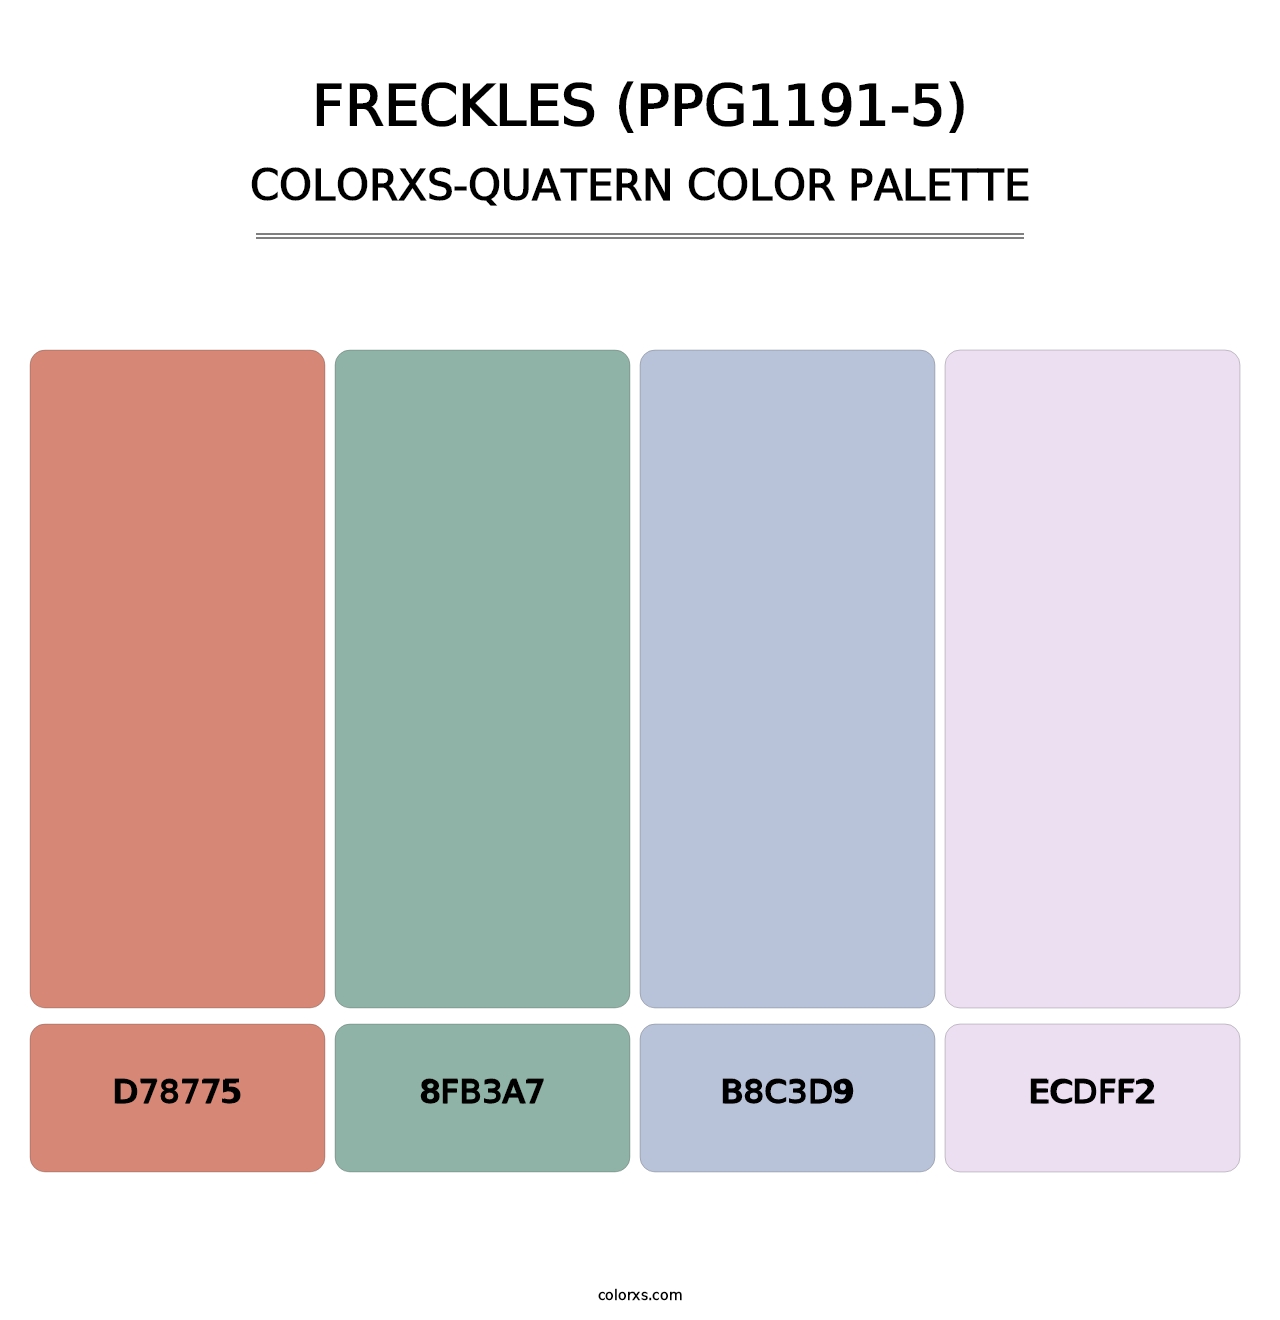 Freckles (PPG1191-5) - Colorxs Quatern Palette